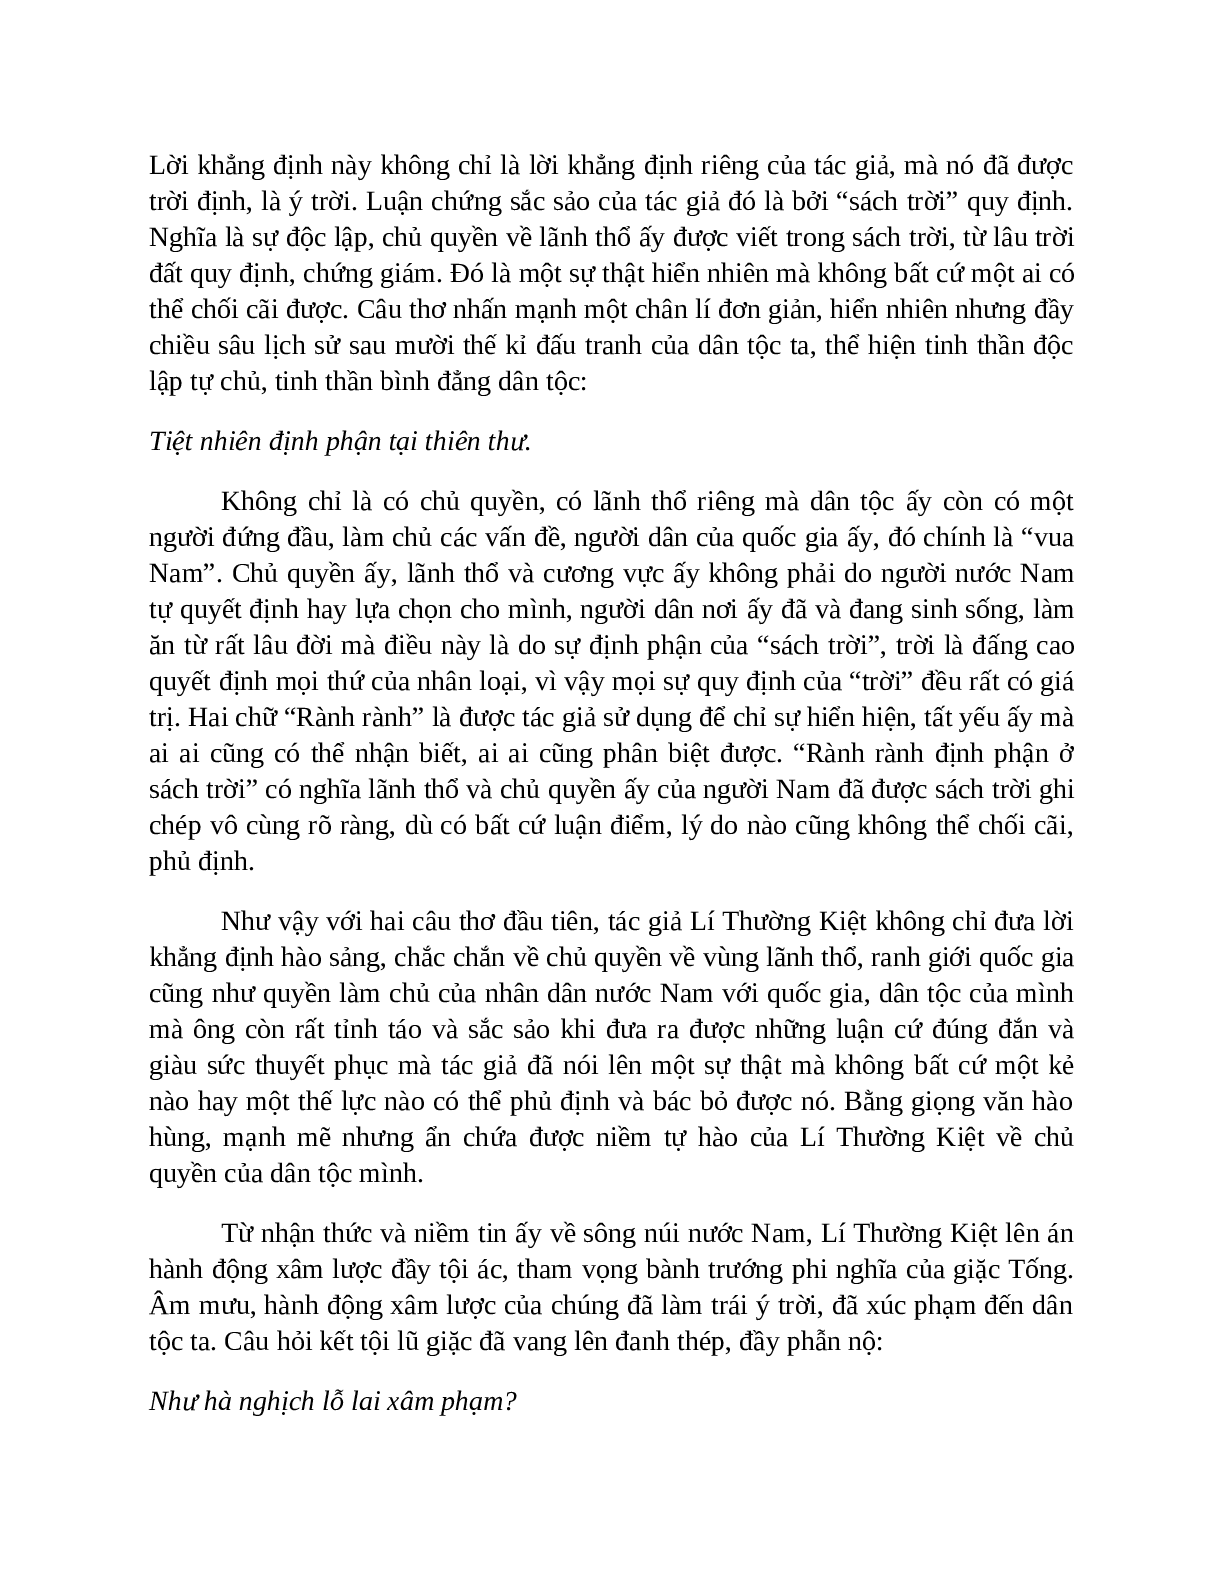 Sơ đồ tư duy bài Sông núi nước Nam dễ nhớ, ngắn nhất - Ngữ văn lớp 7 (trang 4)